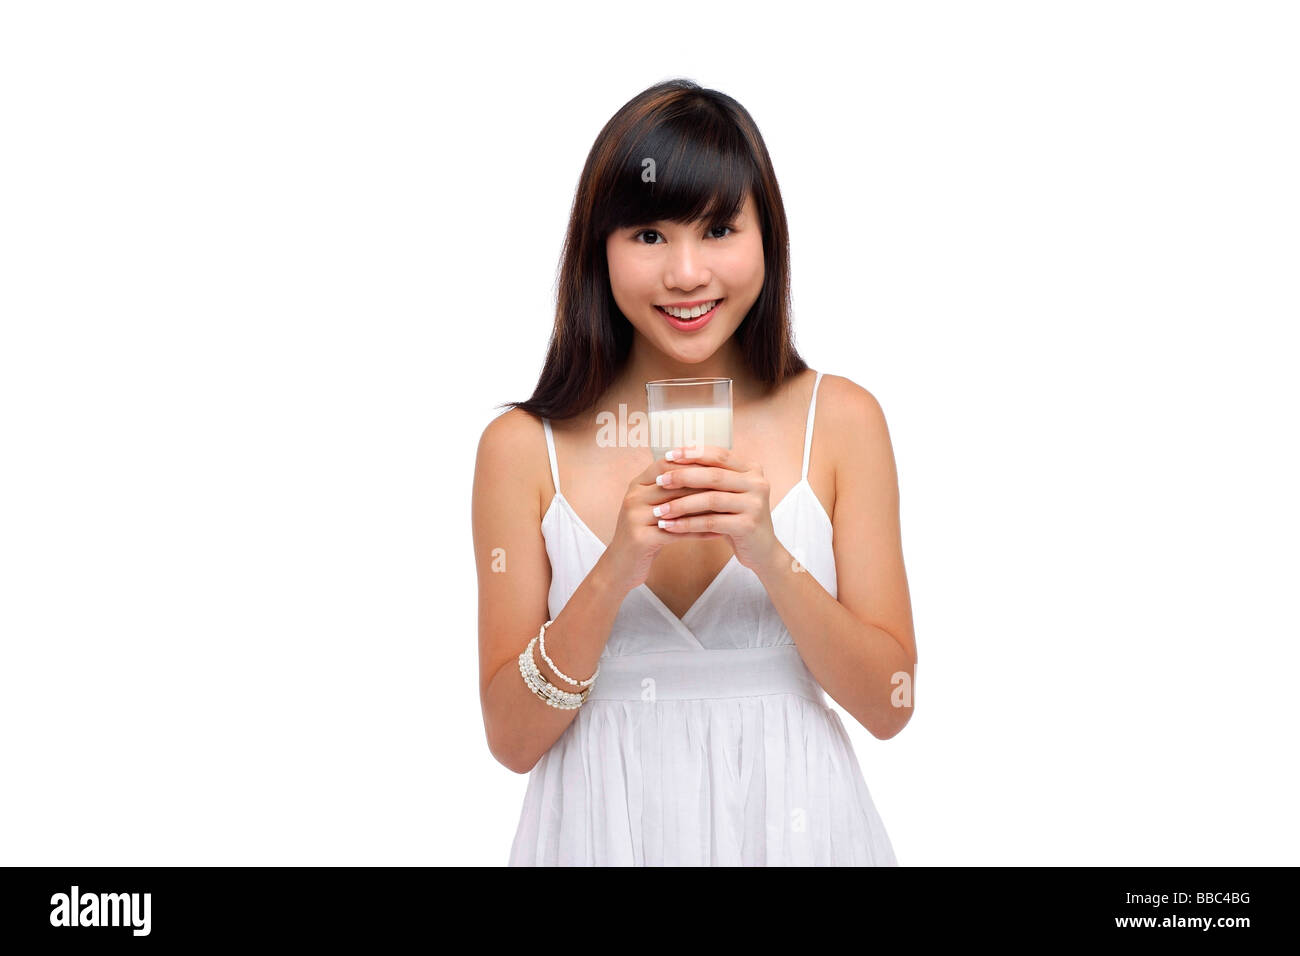 Young woman wearing white dress holding et verre de lait Banque D'Images